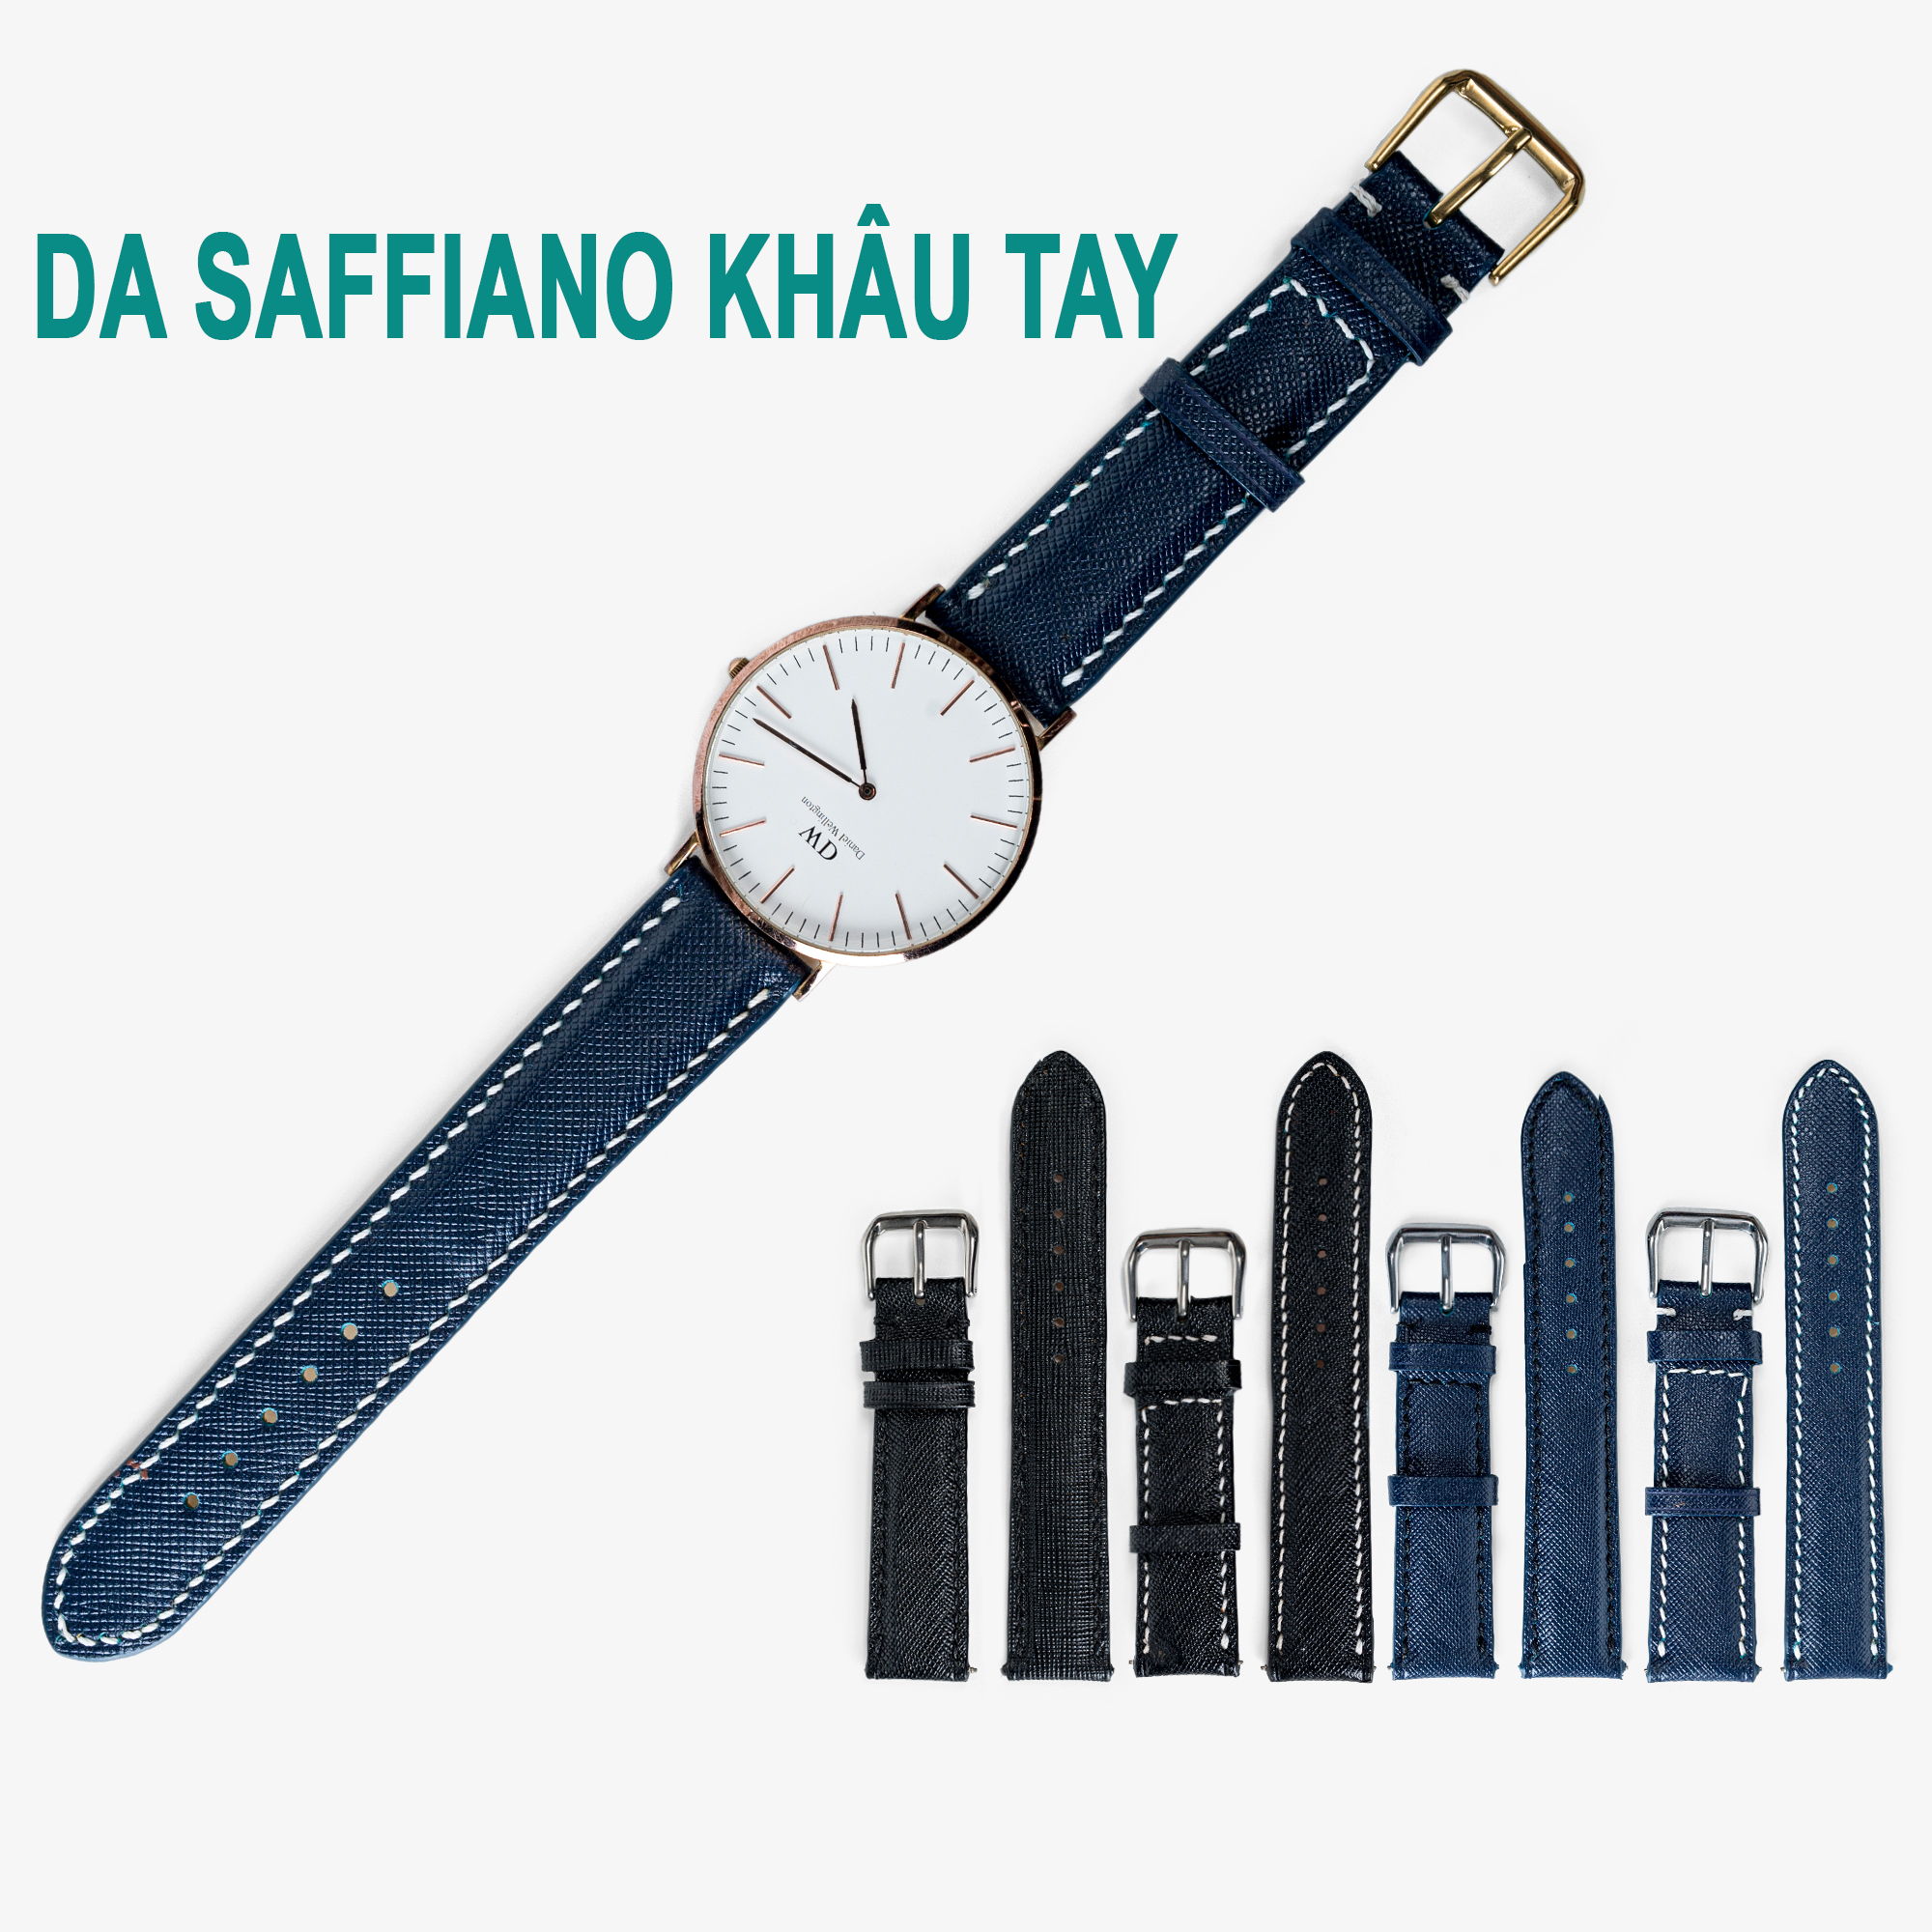 Dây đồng hồ nam da saffiano D112-da thật-khâu tay thủ công cao cấp, dây da đồng hồ size 18mm 20mm 22mm 24mm phù hợp với cả dw rolex hublot orient seiko